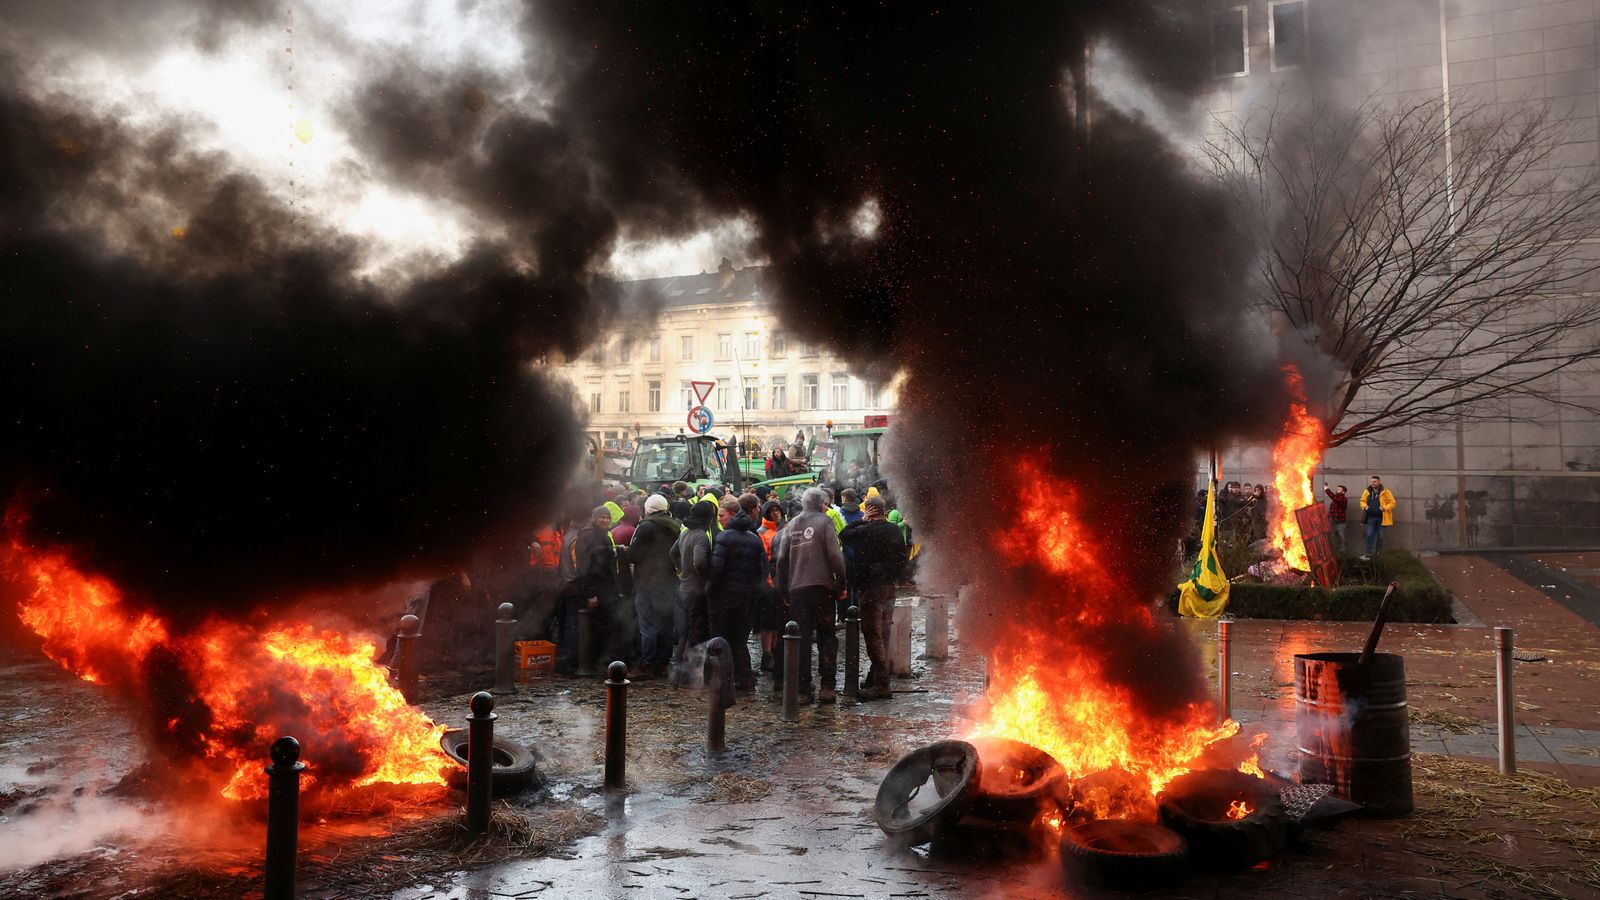 اندلع حريق خارج البرلمان الأوروبي في بروكسل أثناء احتجاج المزارعين  اخبار العالم